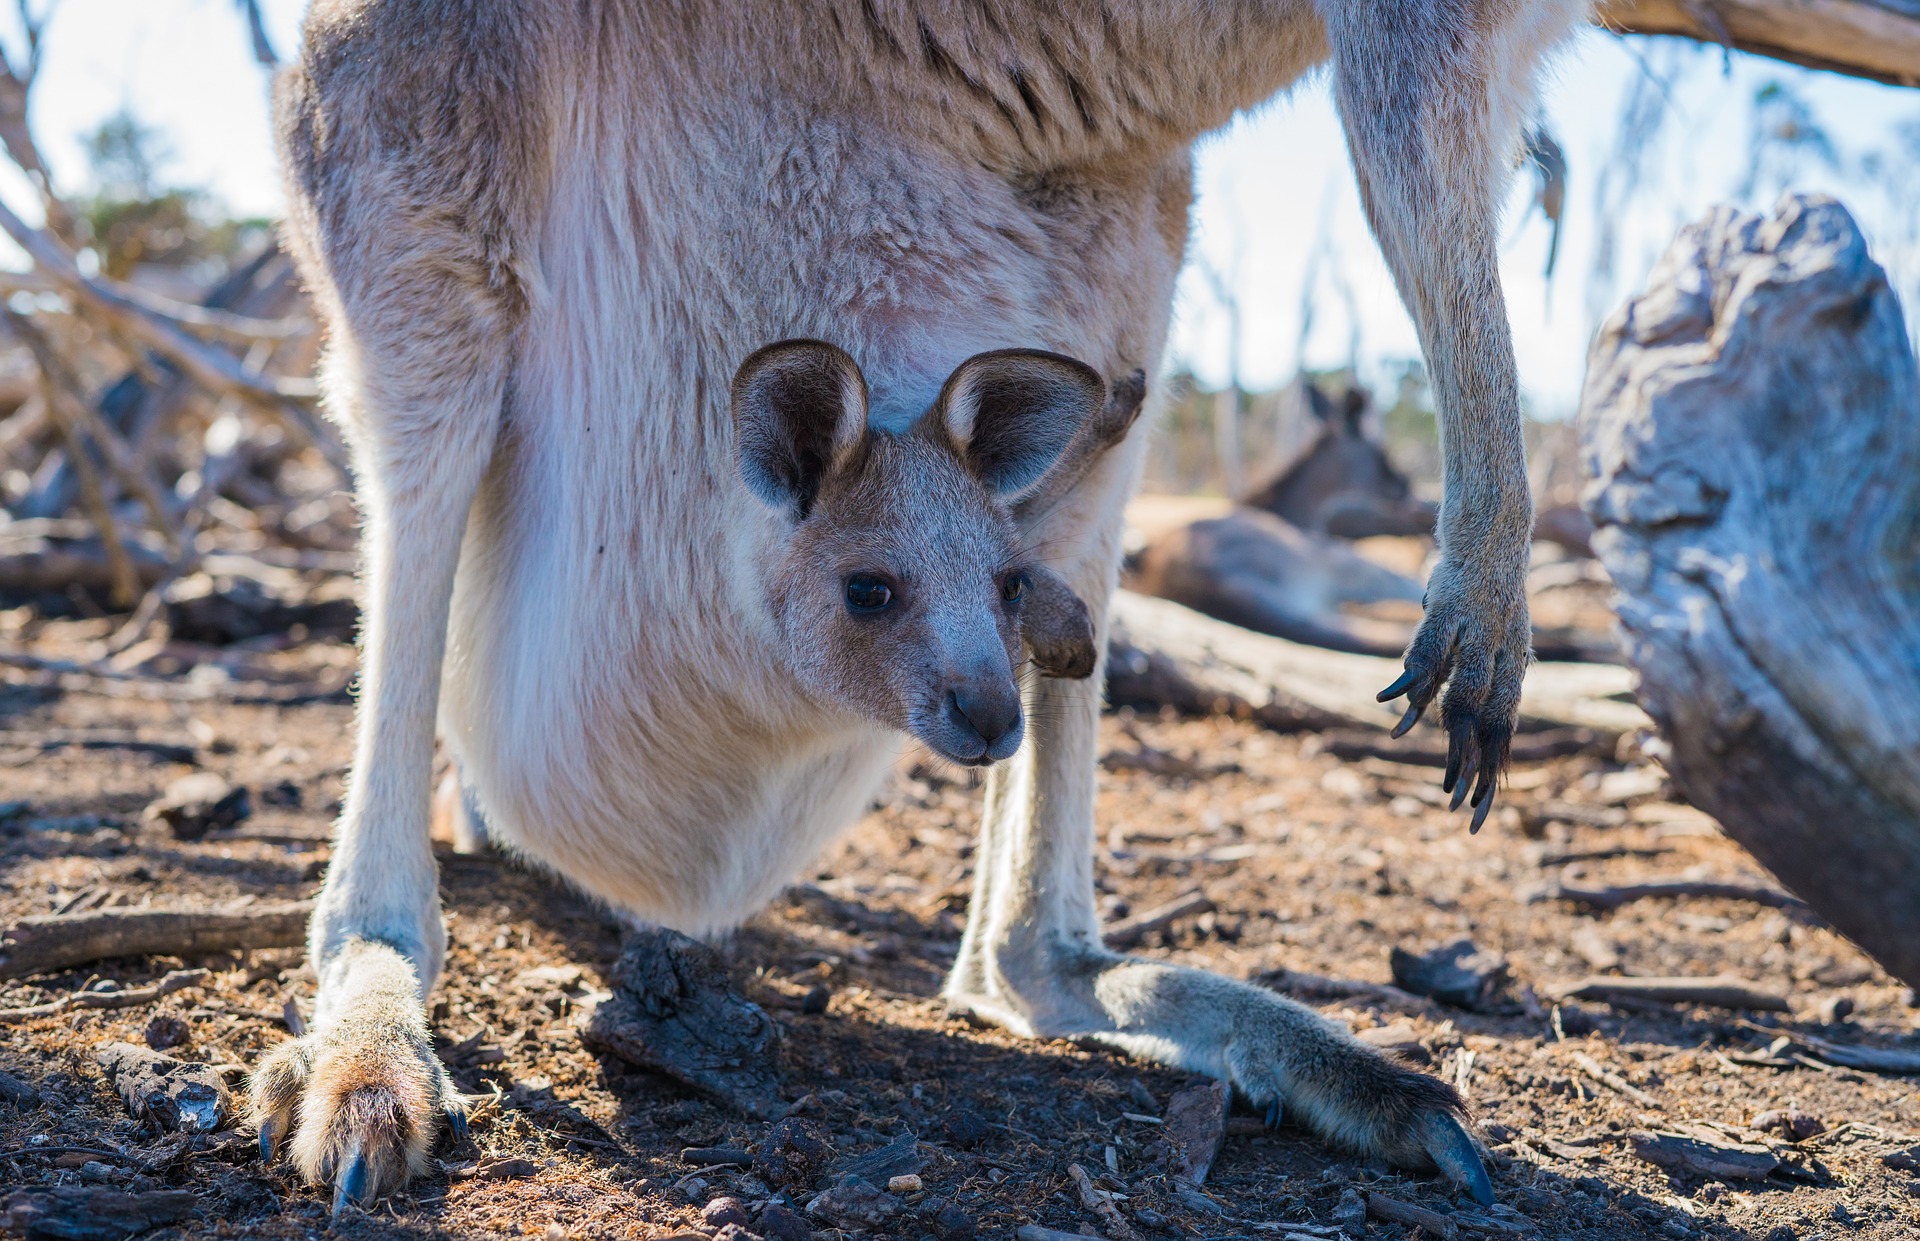 Chustonoszenie jest analogiczne do noszenia dziecka w kieszonce przez kangura